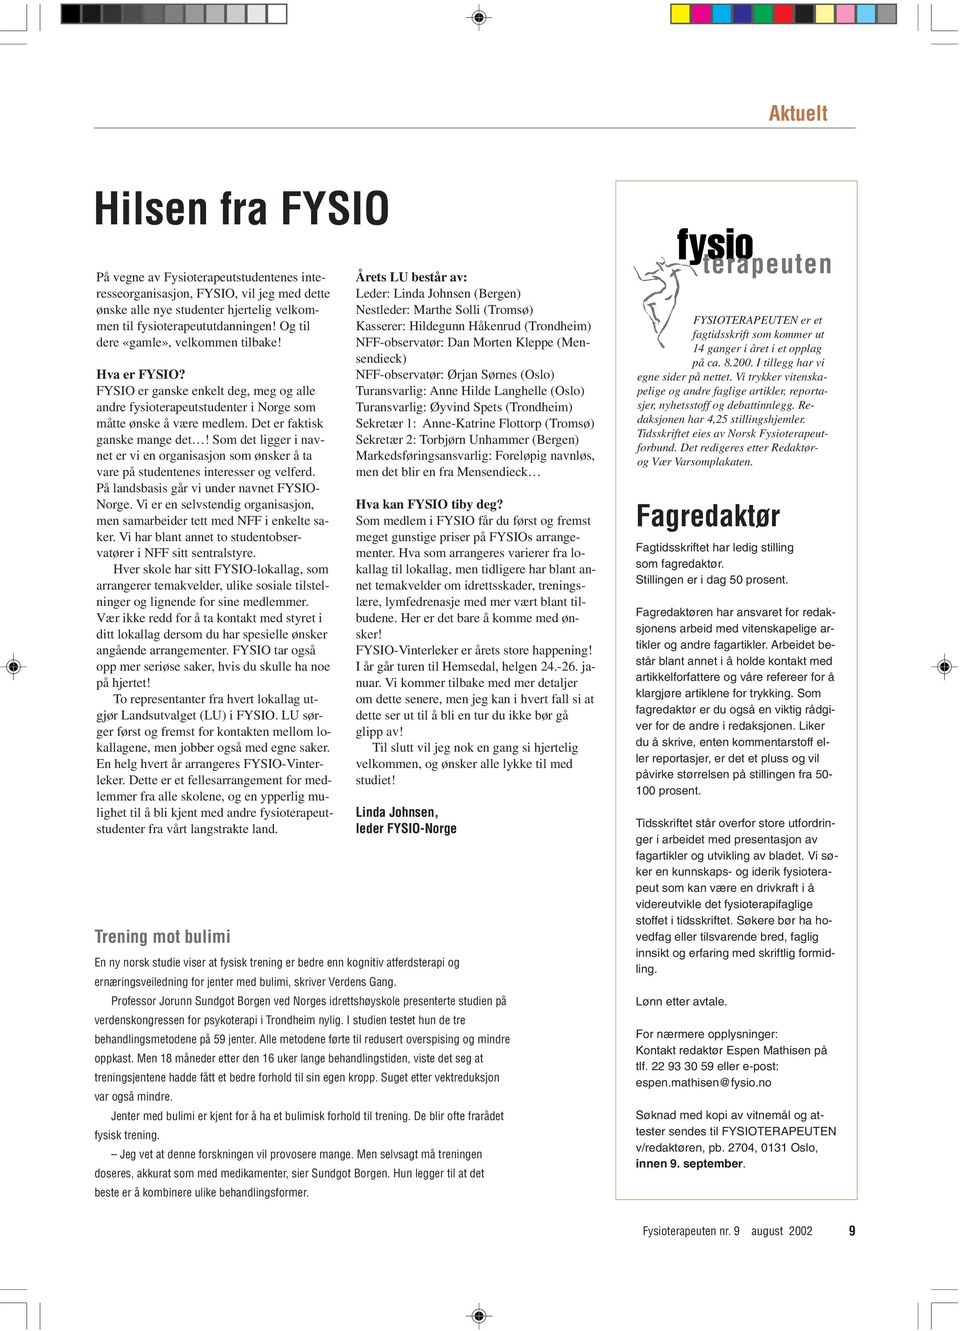 Som det ligger i navnet er vi en organisasjon som ønsker å ta vare på studentenes interesser og velferd. På landsbasis går vi under navnet FYSIO- Norge.